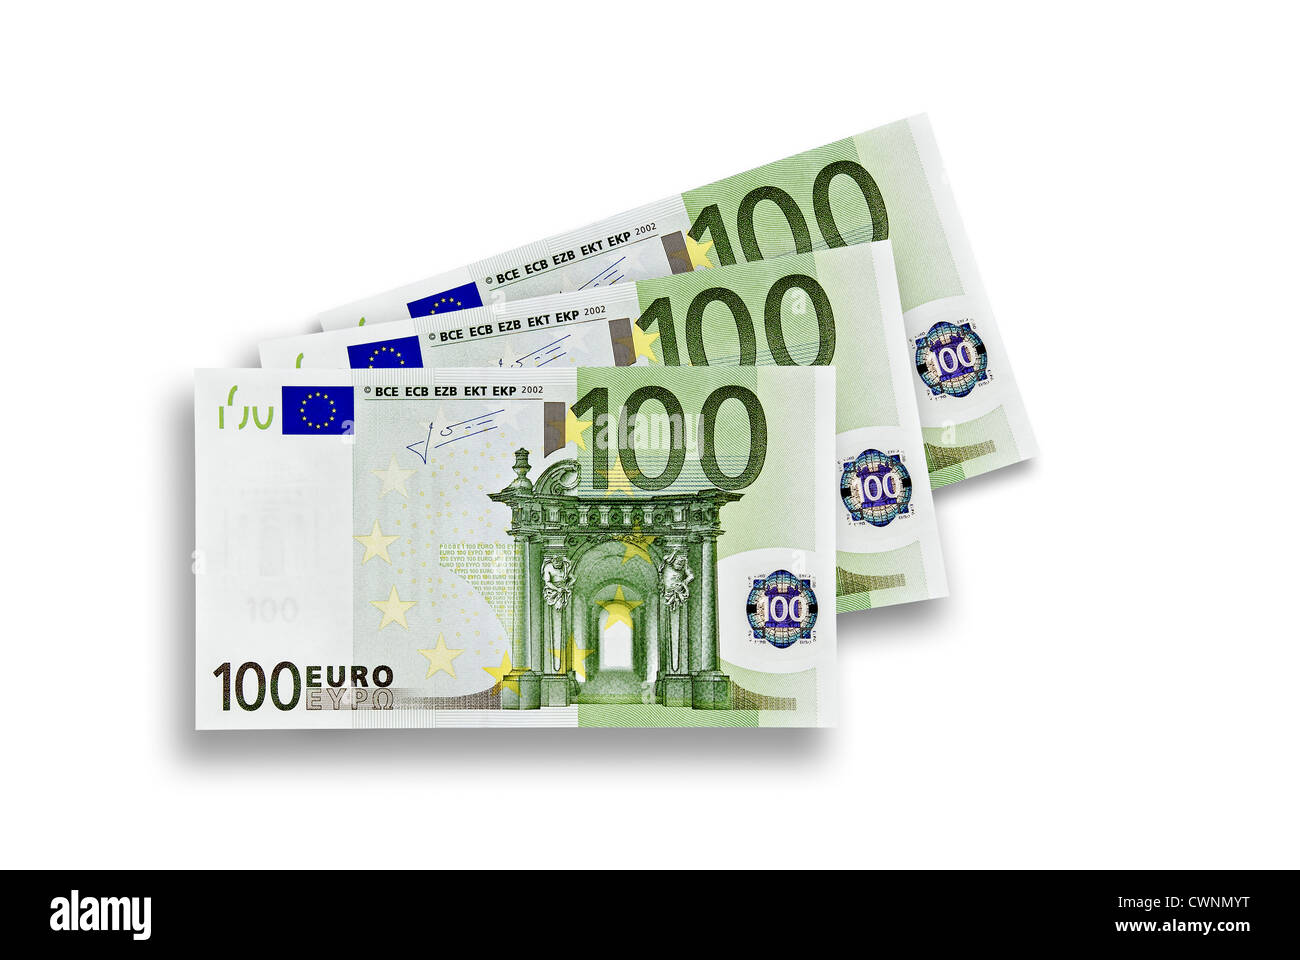 3 100 billets en euros, 300 euros, isolé sur fond blanc 100 % Banque D'Images